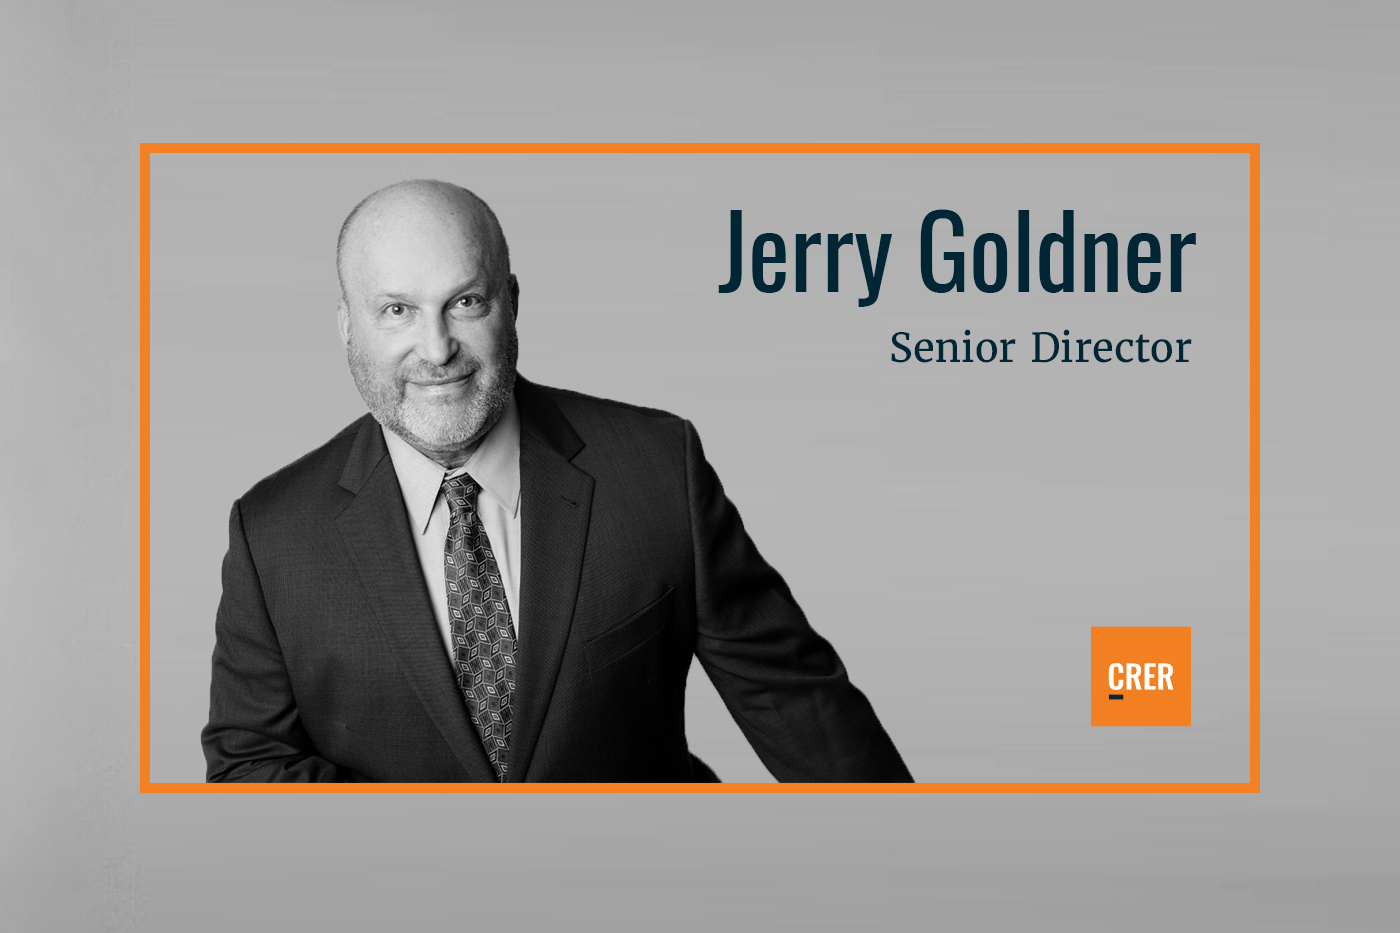 Jerry Goldner Joins CRER